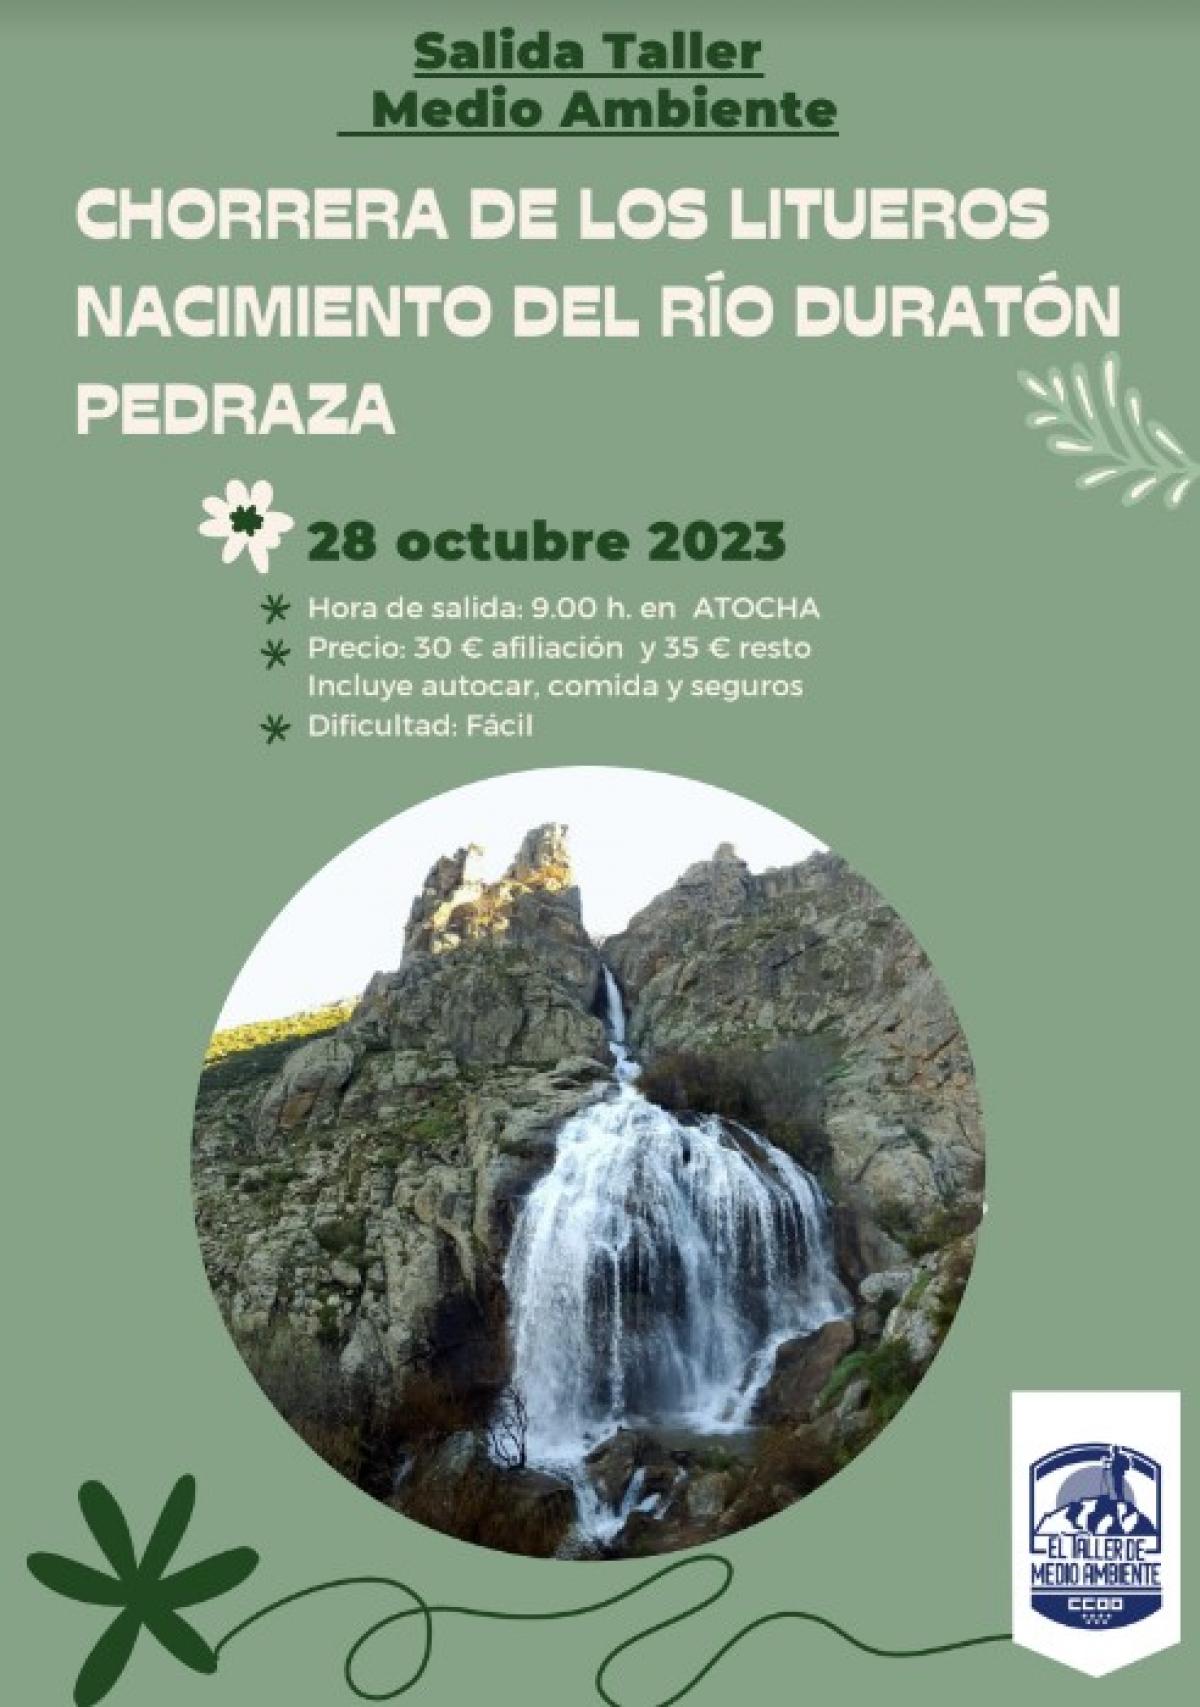 Salida del Taller de Medio Ambiente a la Chorrera de los Litueros, nacimiento del Río Duratón, Pedraza